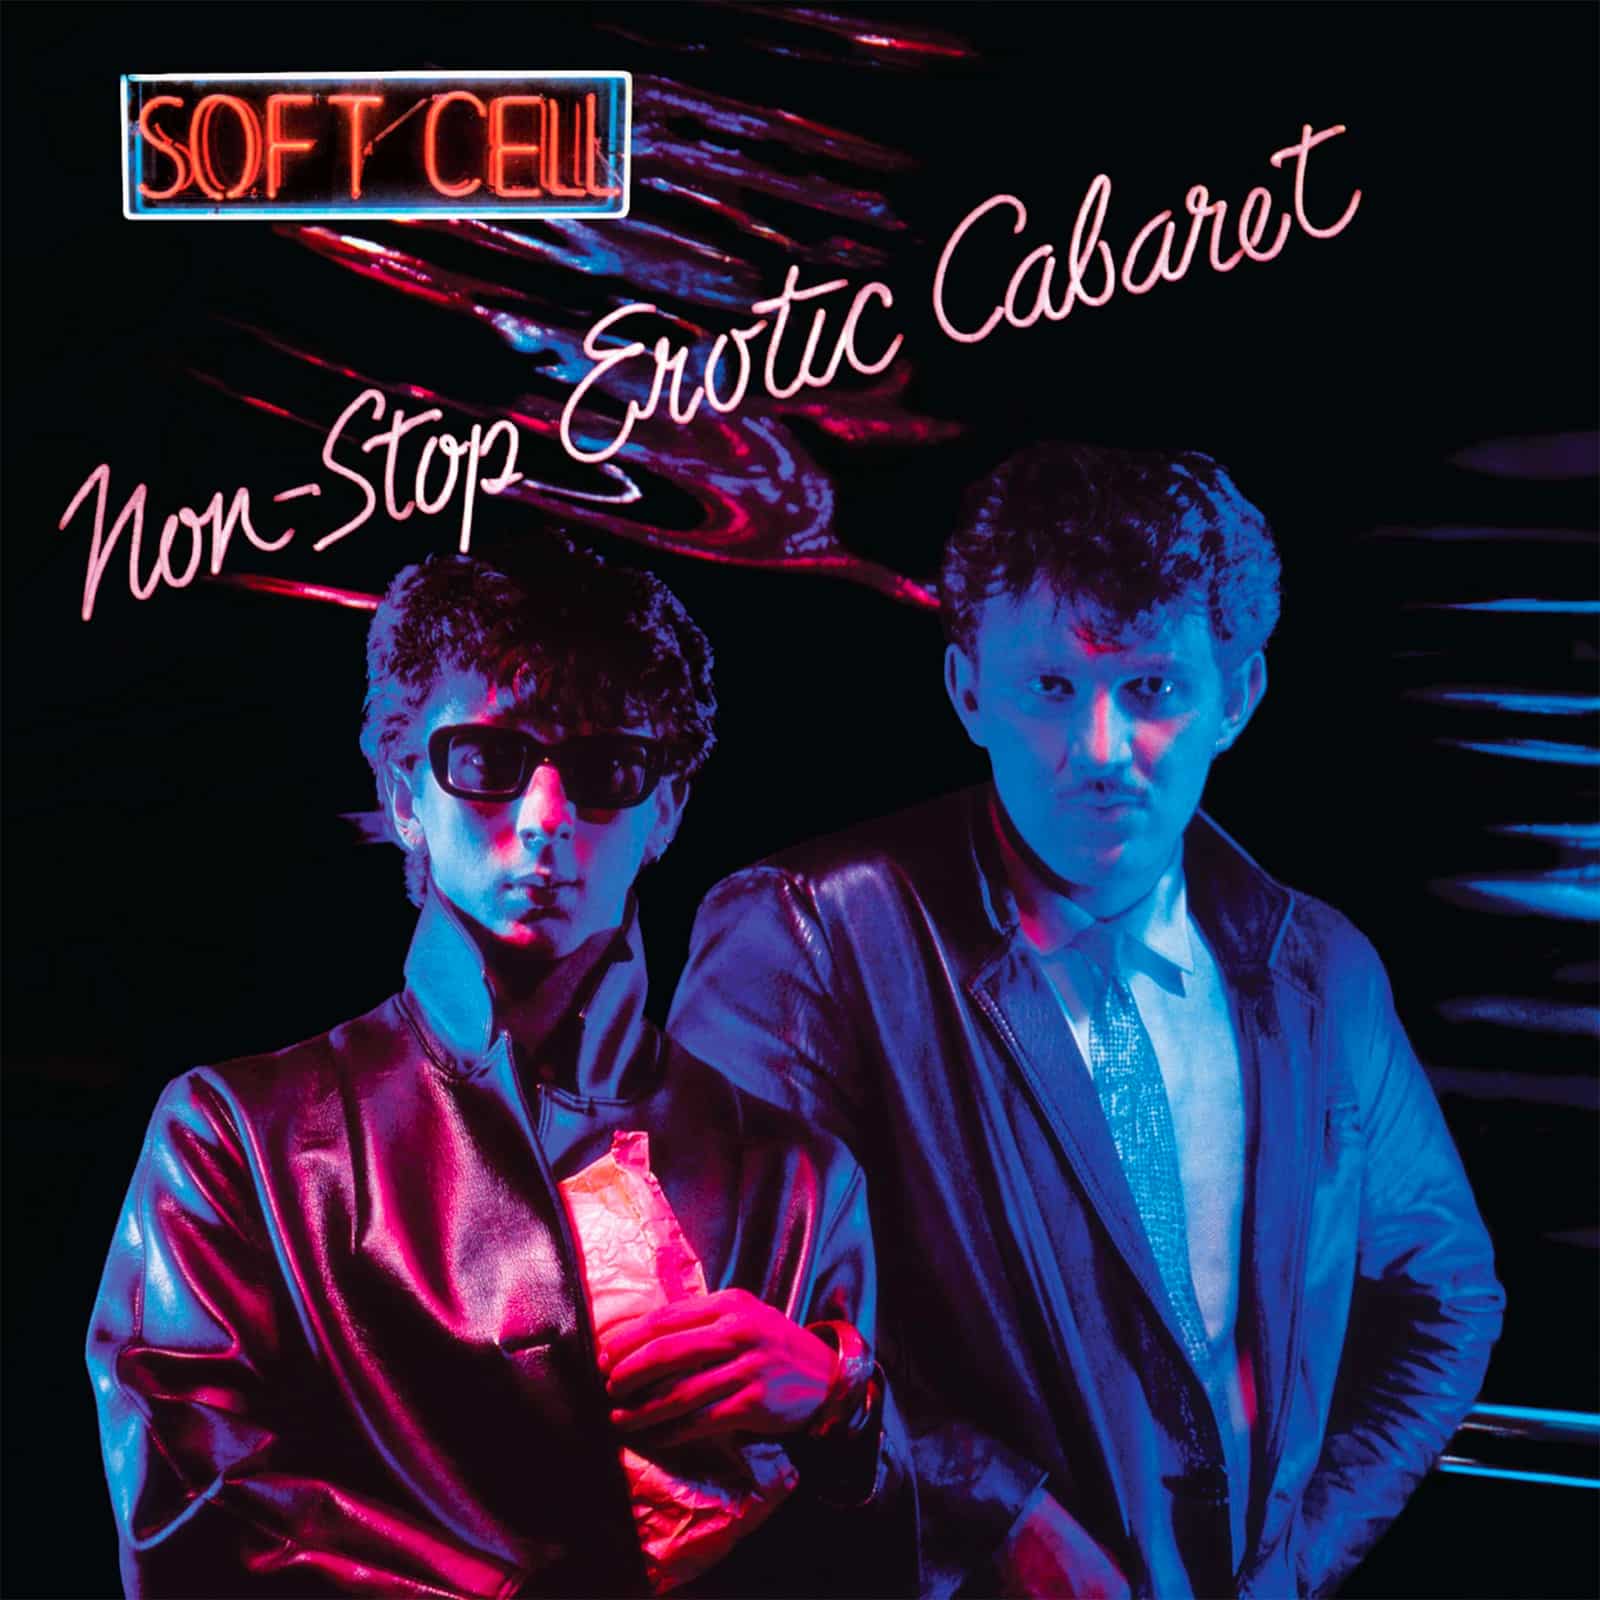 Das Bild zeigt das Artwork des Album "Non-Stop Erotic Cabaret" der Band Soft-Cell